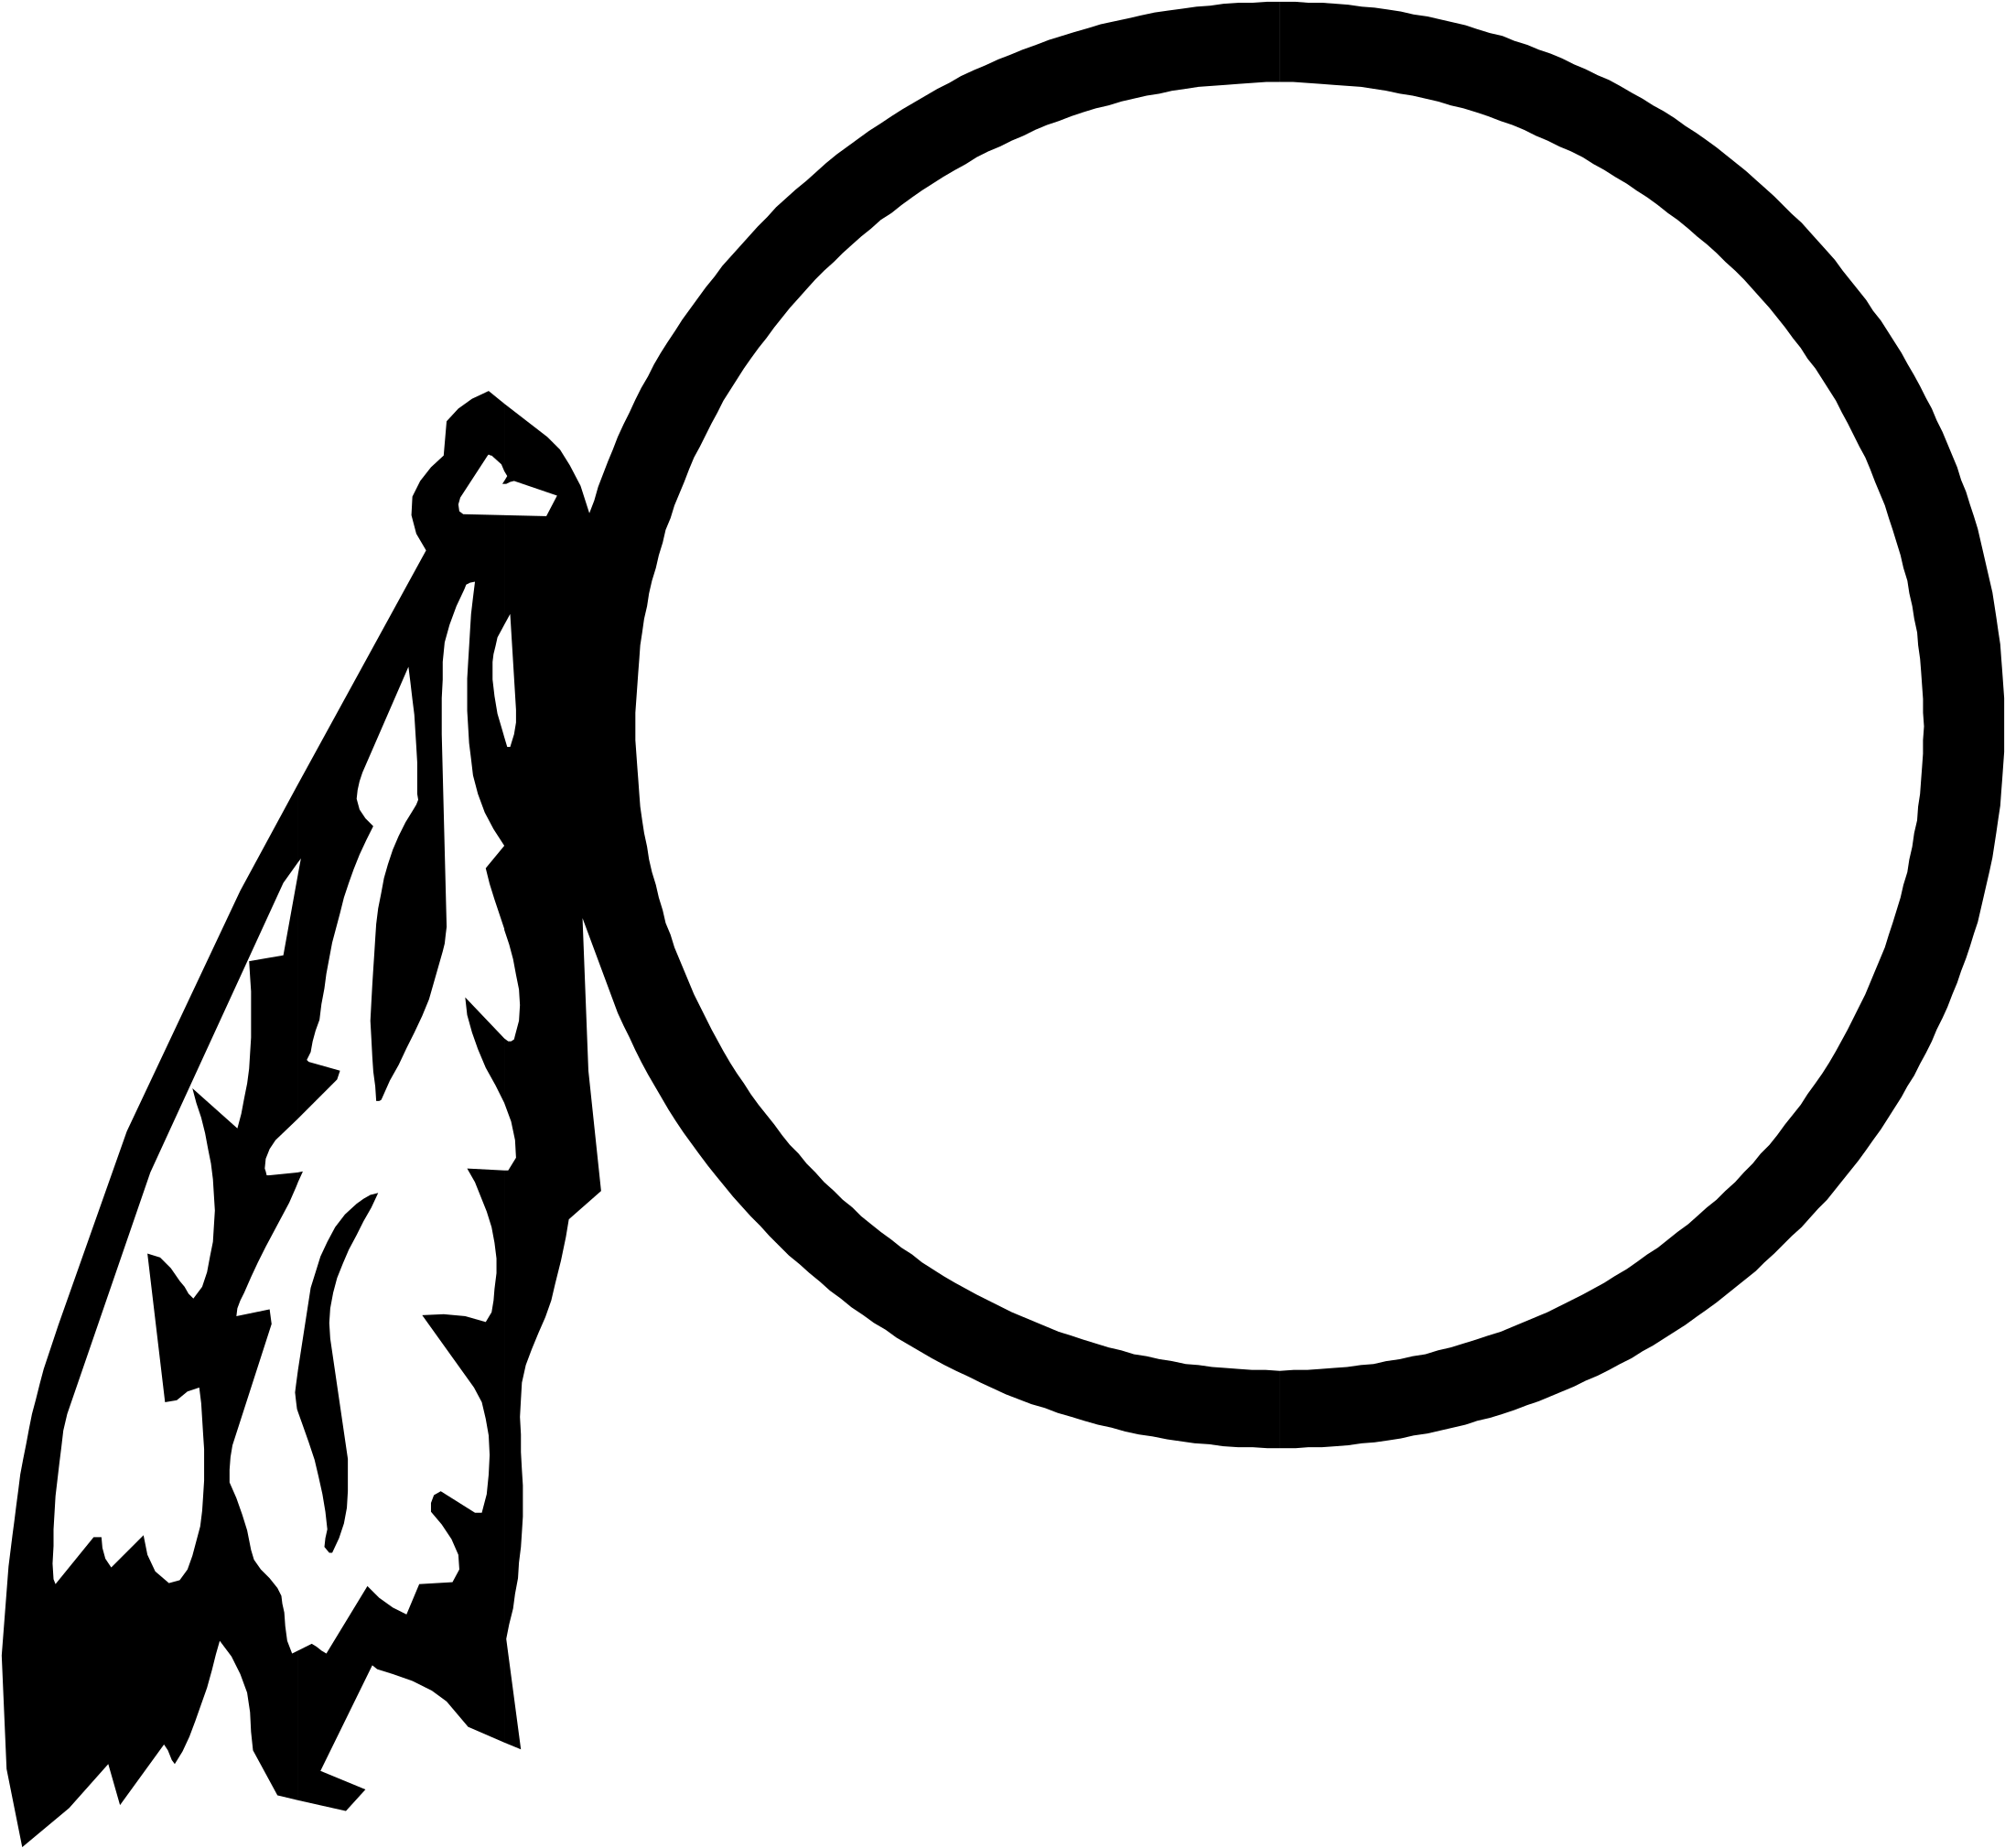 Utah Utes Logo Black And White - Utah Utes Sportslogos (2400x2400)